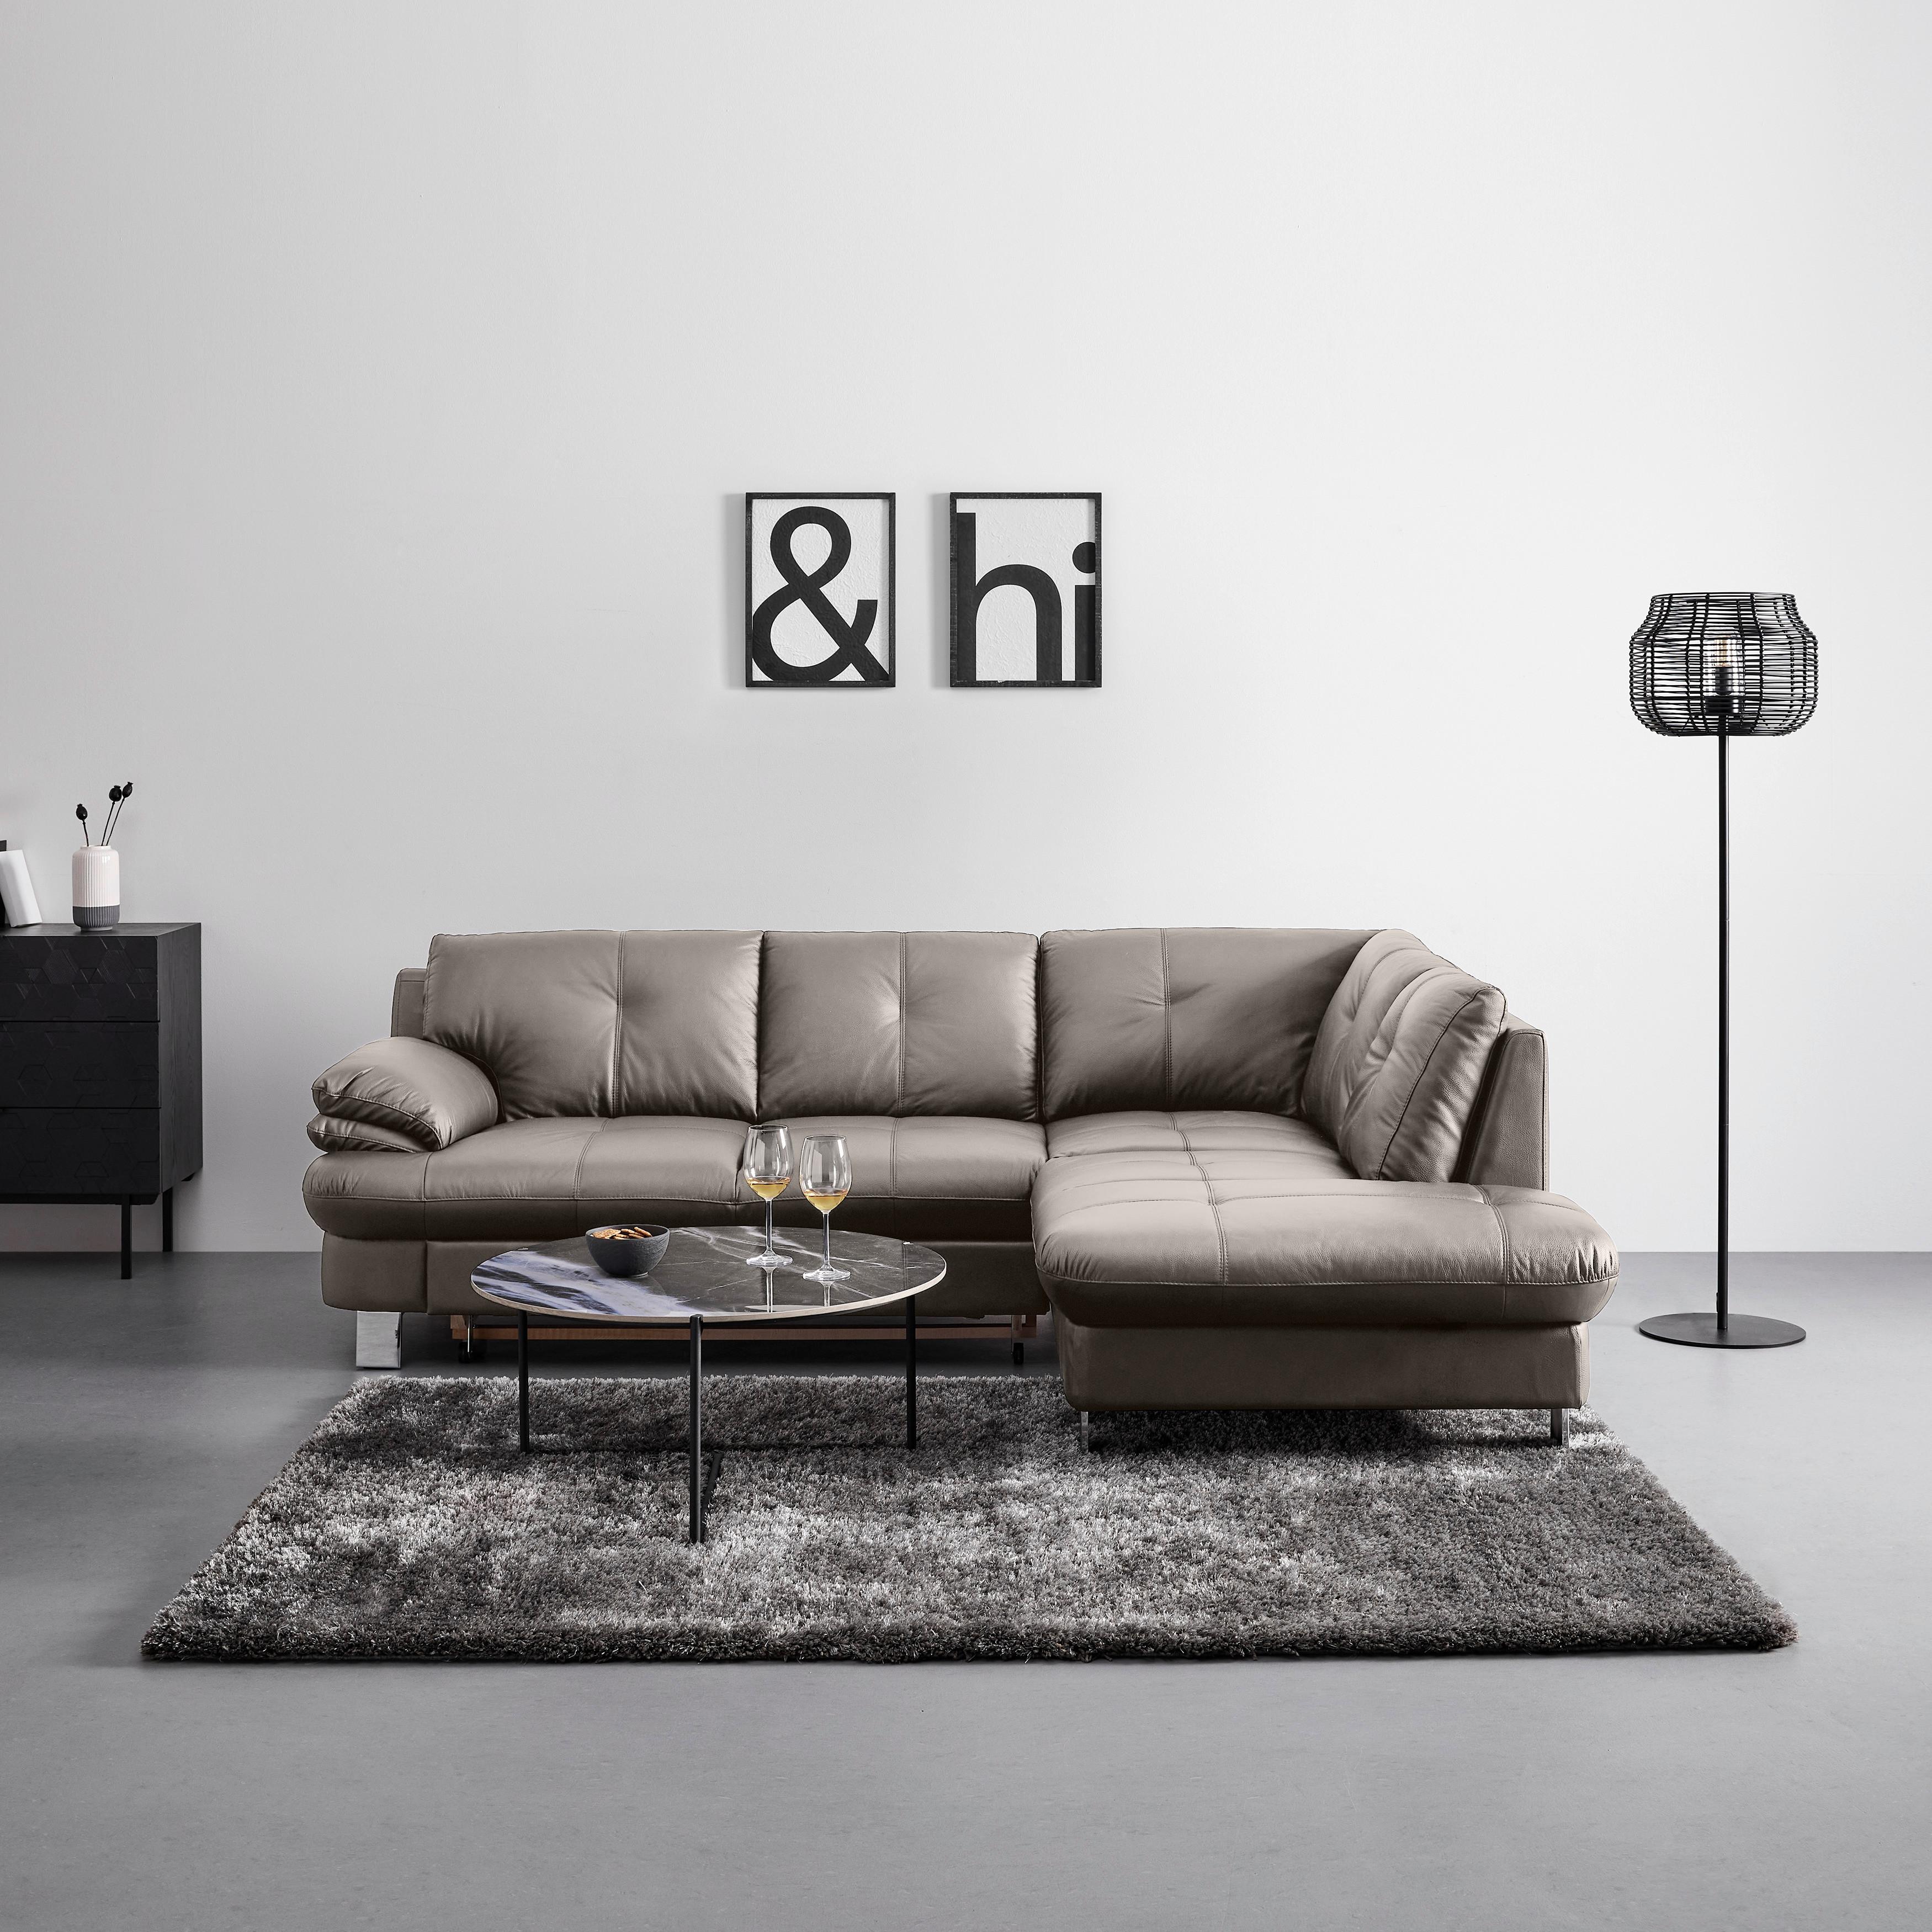 Sedežna Garnitura Bernadette Ii - siva/krom, Moderno, kovina/tekstil (247/82/185cm) - Bessagi Home